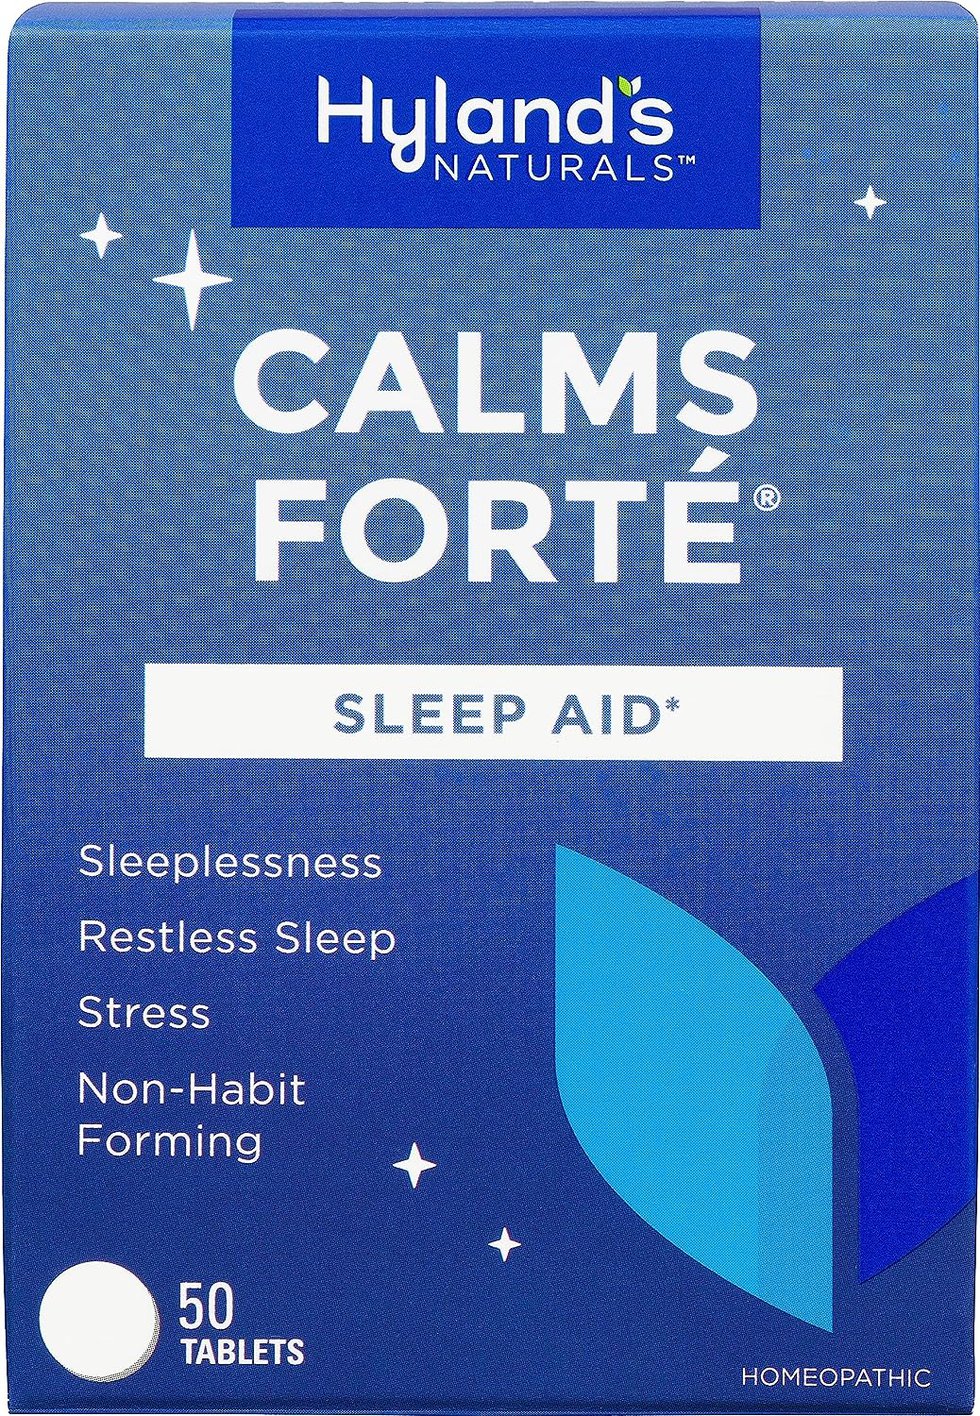 Calms Forte.jpg